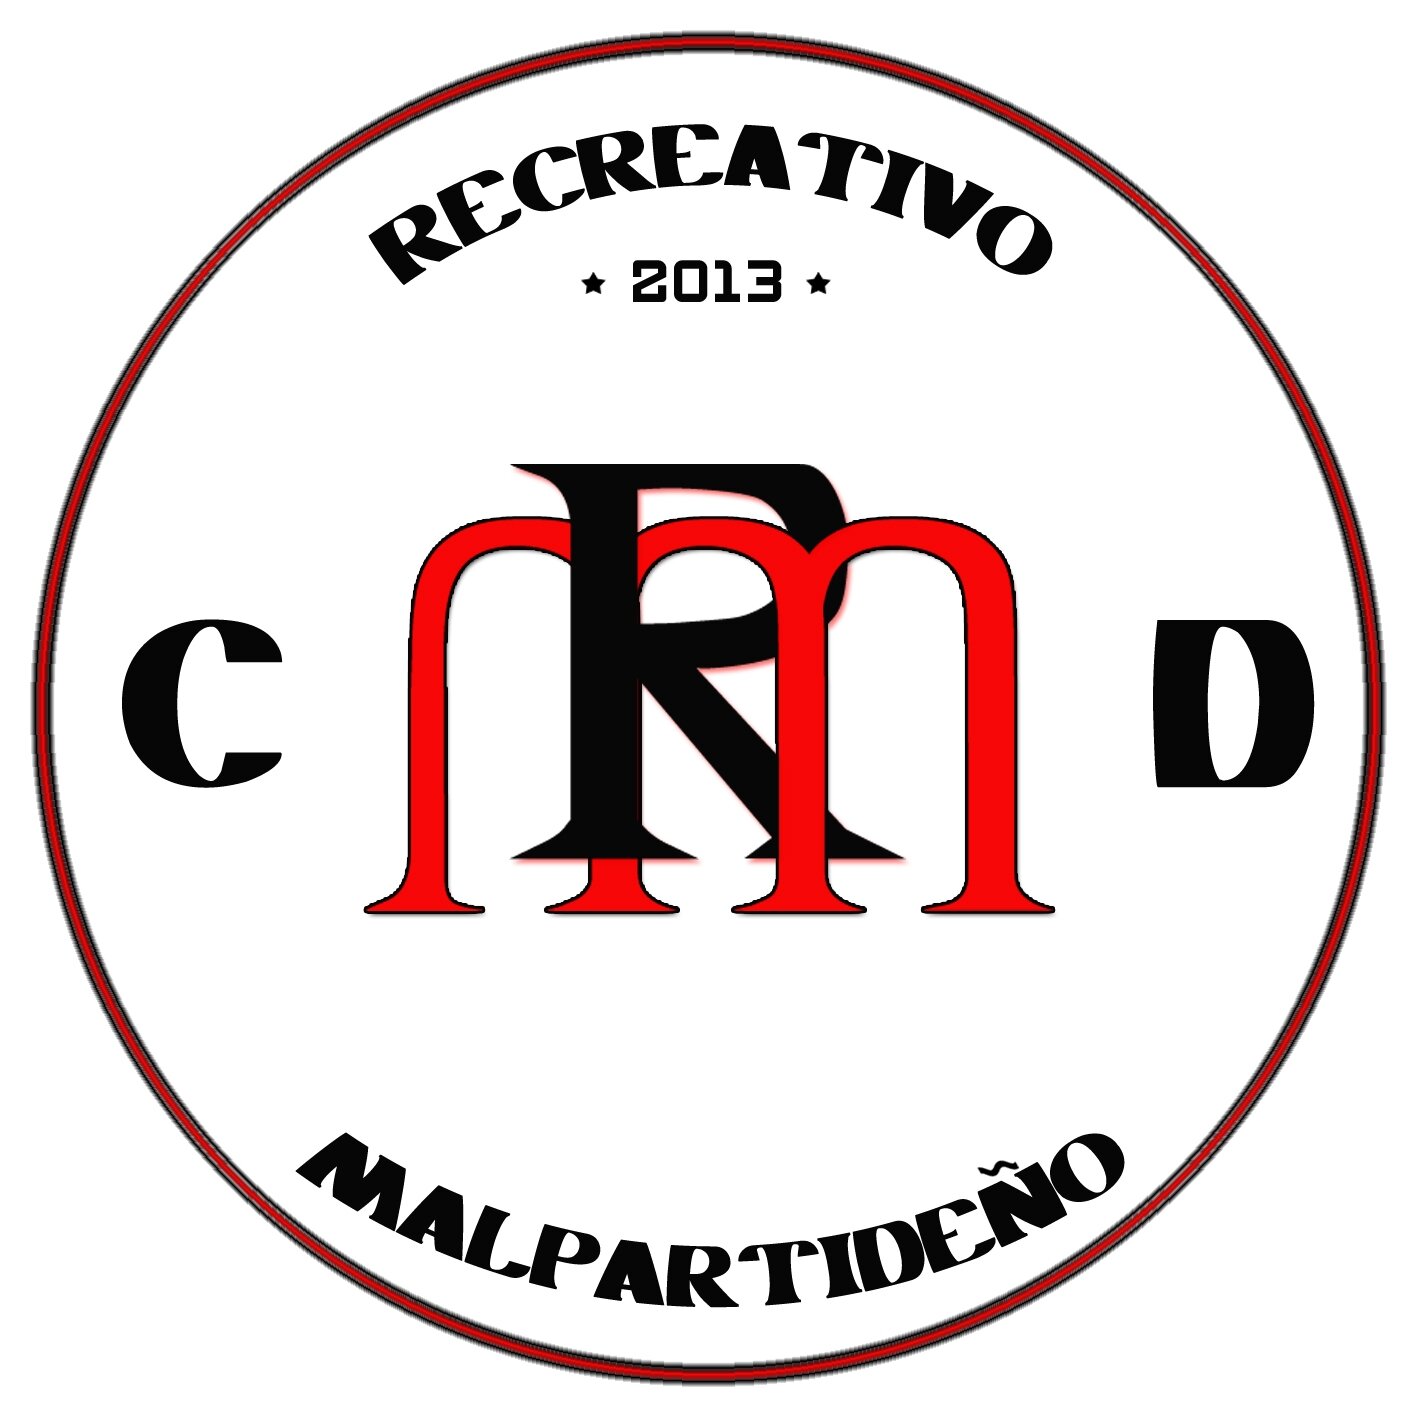 CLUB DEPORTIVO RECREATIVO MALPARTIDEÑO.
recremalpar@hotmail.com